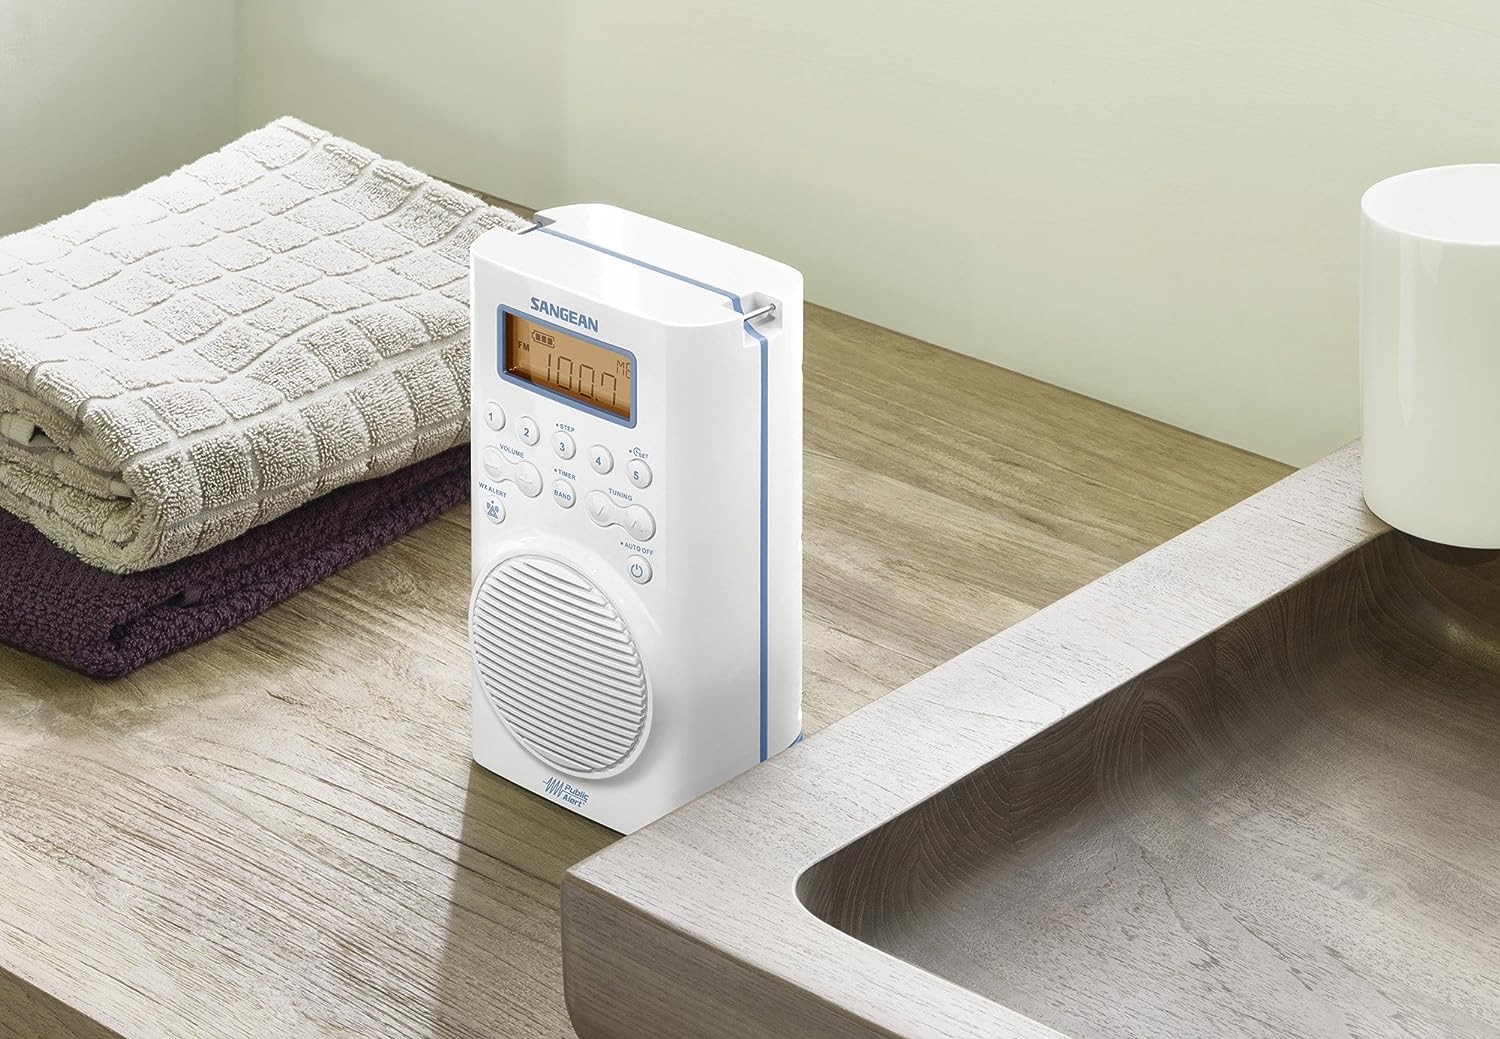 Radio de ducha impermeable H205 AMFM para alerta meteorológica, color blanco